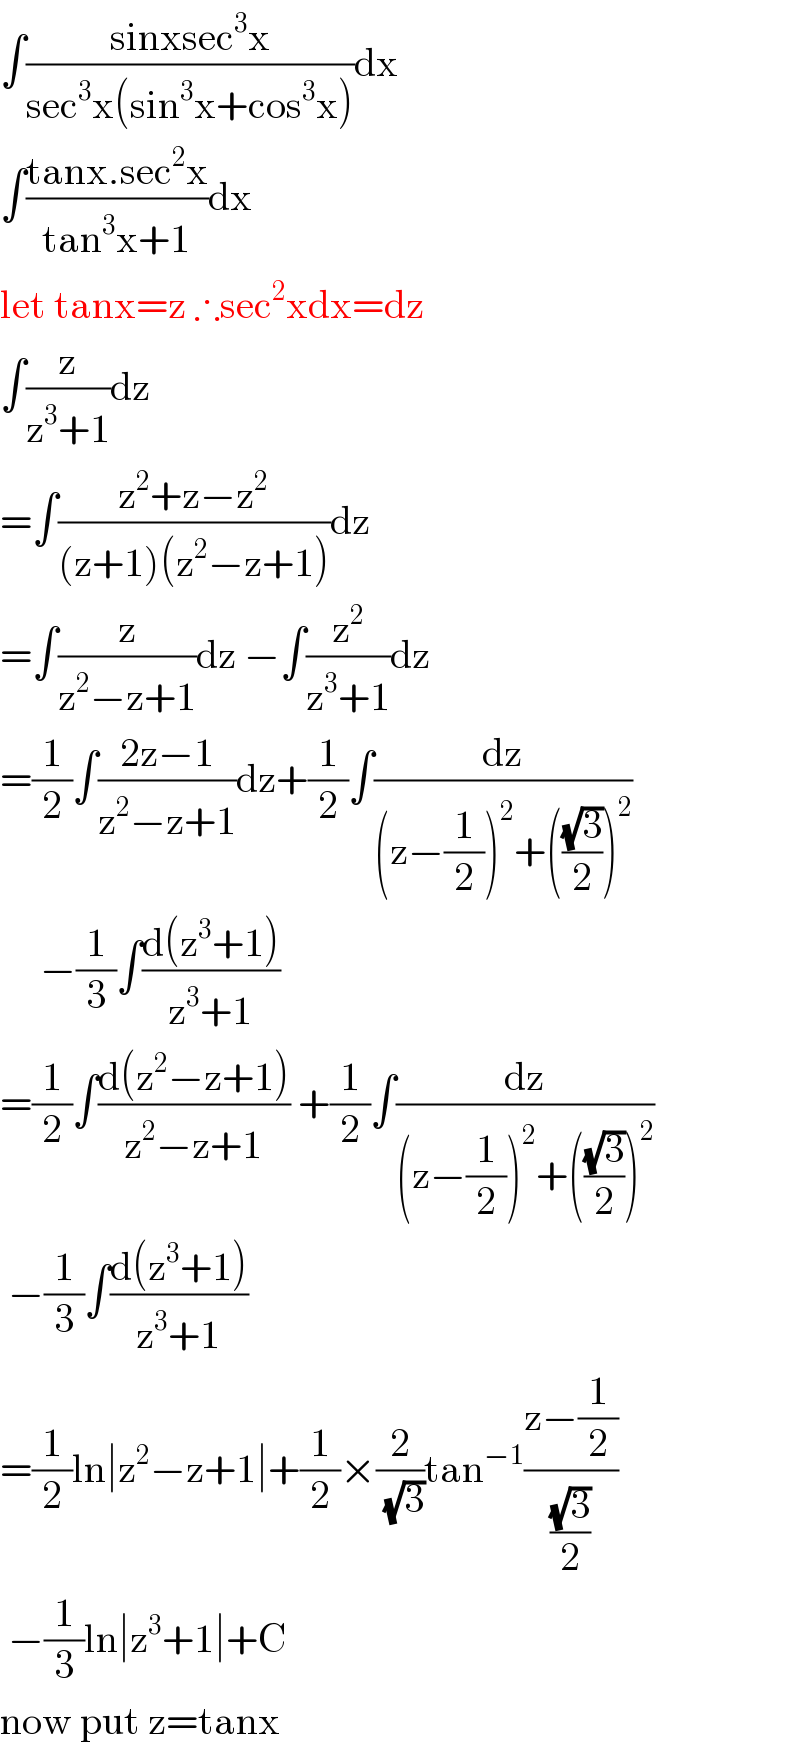 ∫((sinxsec^3 x)/(sec^3 x(sin^3 x+cos^3 x)))dx  ∫((tanx.sec^2 x)/(tan^3 x+1))dx  let tanx=z ∴sec^2 xdx=dz  ∫(z/(z^3 +1))dz  =∫((z^2 +z−z^2 )/((z+1)(z^2 −z+1)))dz  =∫(z/(z^2 −z+1))dz −∫(z^2 /(z^3 +1))dz  =(1/2)∫((2z−1)/(z^2 −z+1))dz+(1/2)∫(dz/((z−(1/2))^2 +(((√3)/2))^2 ))       −(1/3)∫((d(z^3 +1))/(z^3 +1))  =(1/2)∫((d(z^2 −z+1))/(z^2 −z+1)) +(1/2)∫(dz/((z−(1/2))^2 +(((√3)/2))^2 ))   −(1/3)∫((d(z^3 +1))/(z^3 +1))  =(1/2)ln∣z^2 −z+1∣+(1/2)×(2/(√3))tan^(−1) ((z−(1/2))/((√3)/2))   −(1/3)ln∣z^3 +1∣+C  now put z=tanx  